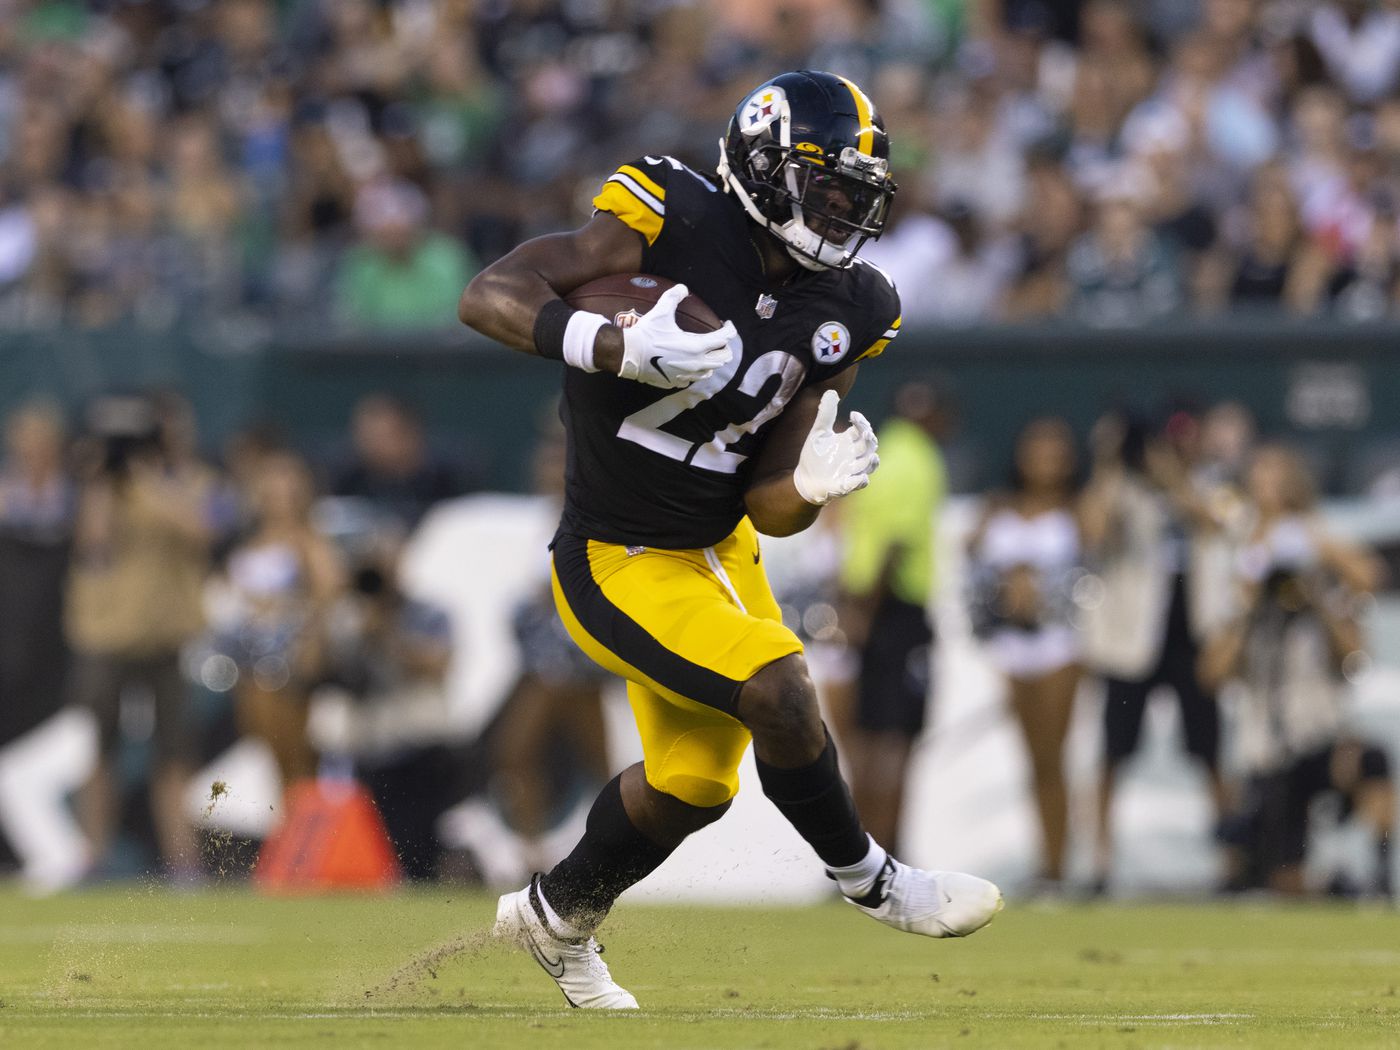 Najee Harris updates: How did Steelers rookie RB perform in Week 1 of preseason